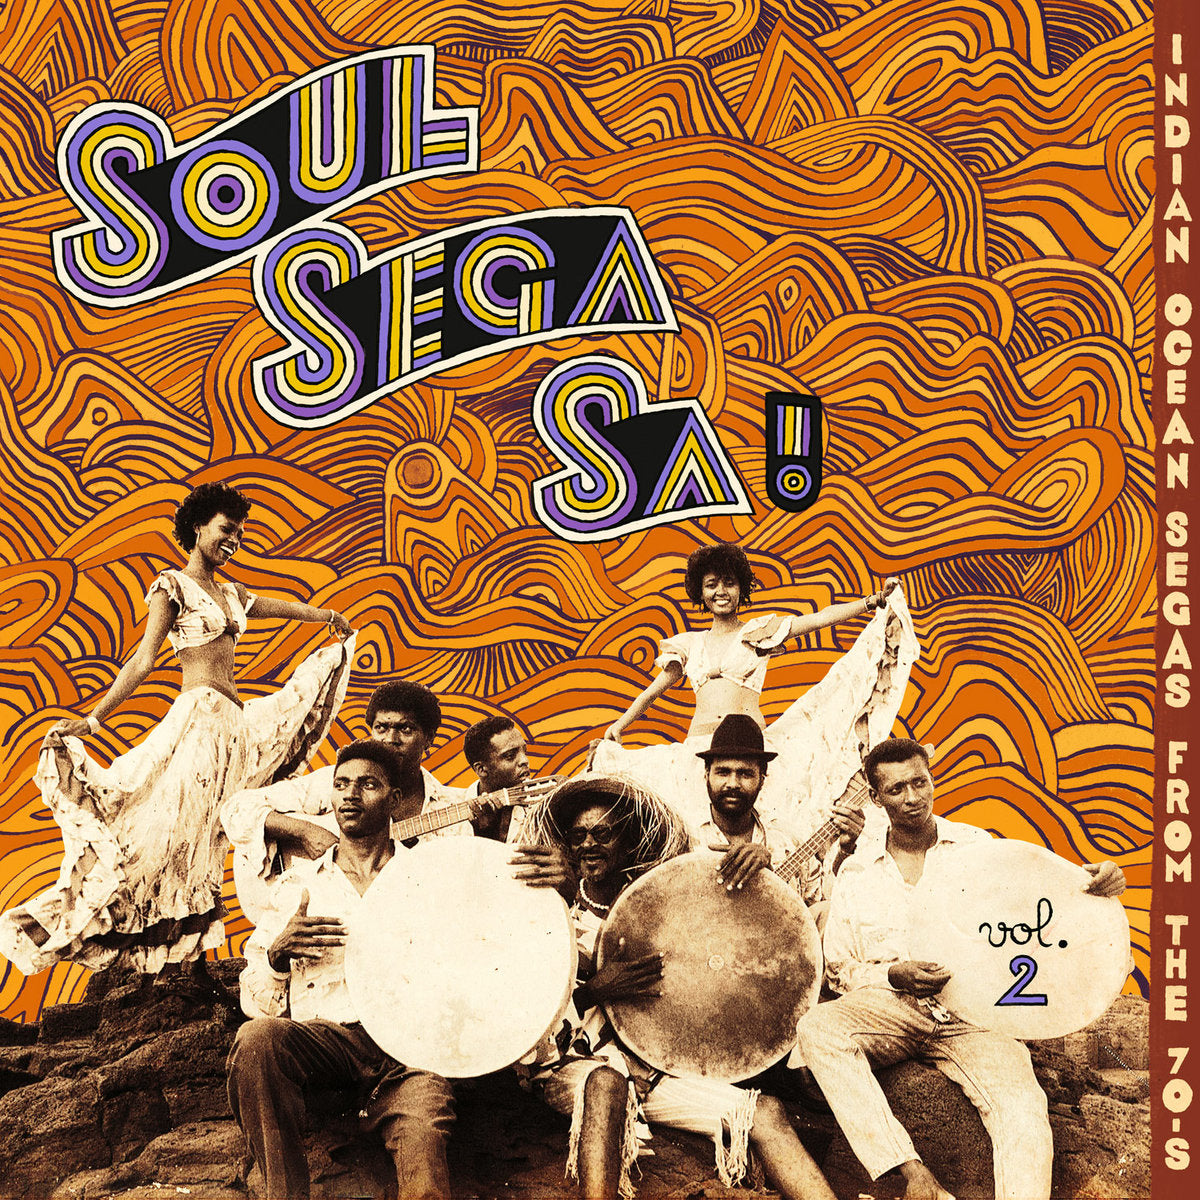 V/A - Soul Sega Sa ! Indian Ocean Segas From The 70's Vol. 2 - LP